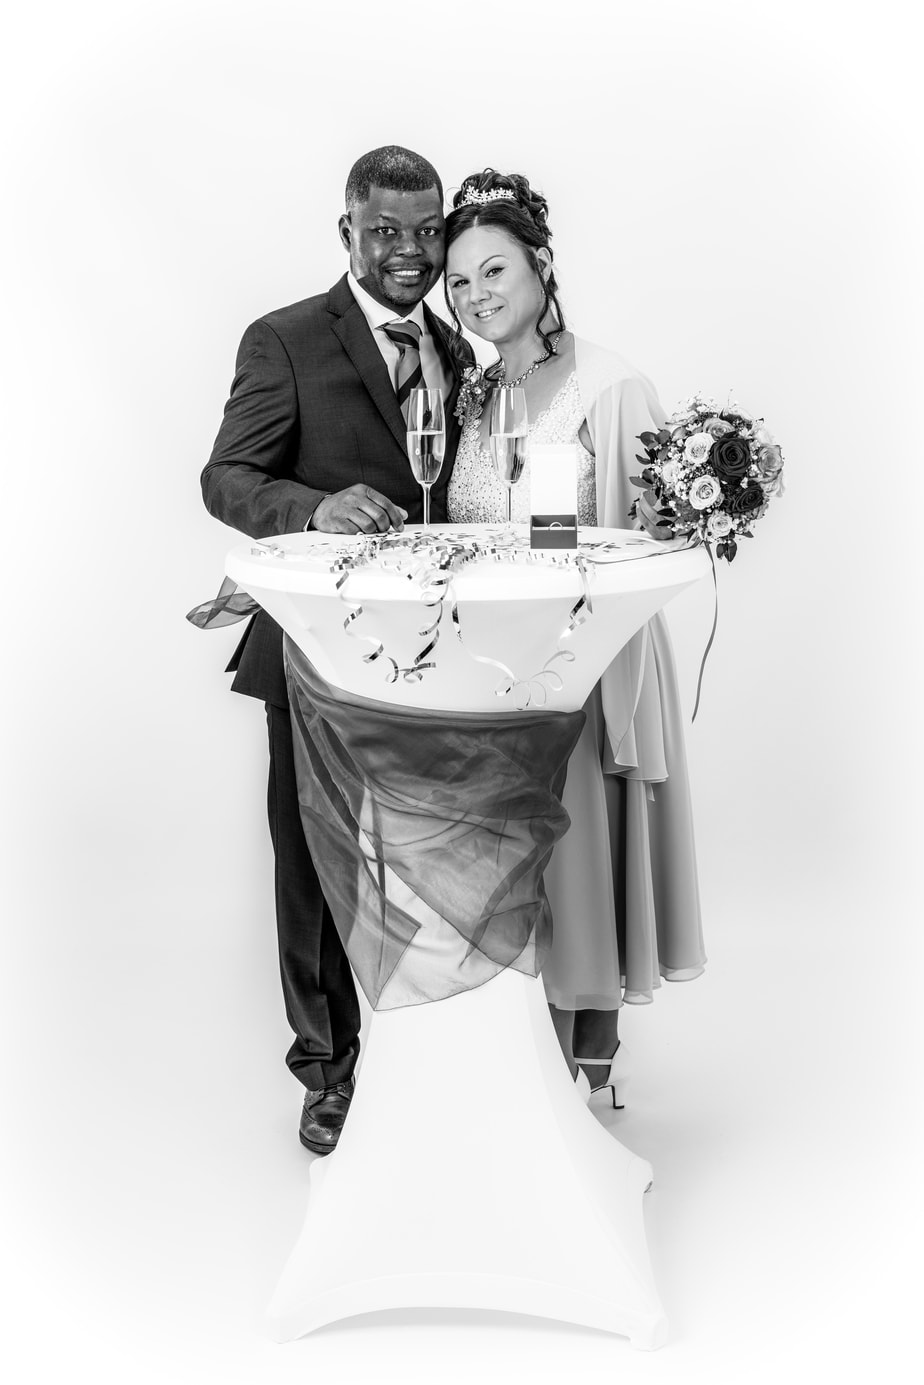 Hochzeitsportrait im Studio in schwarz-weiß